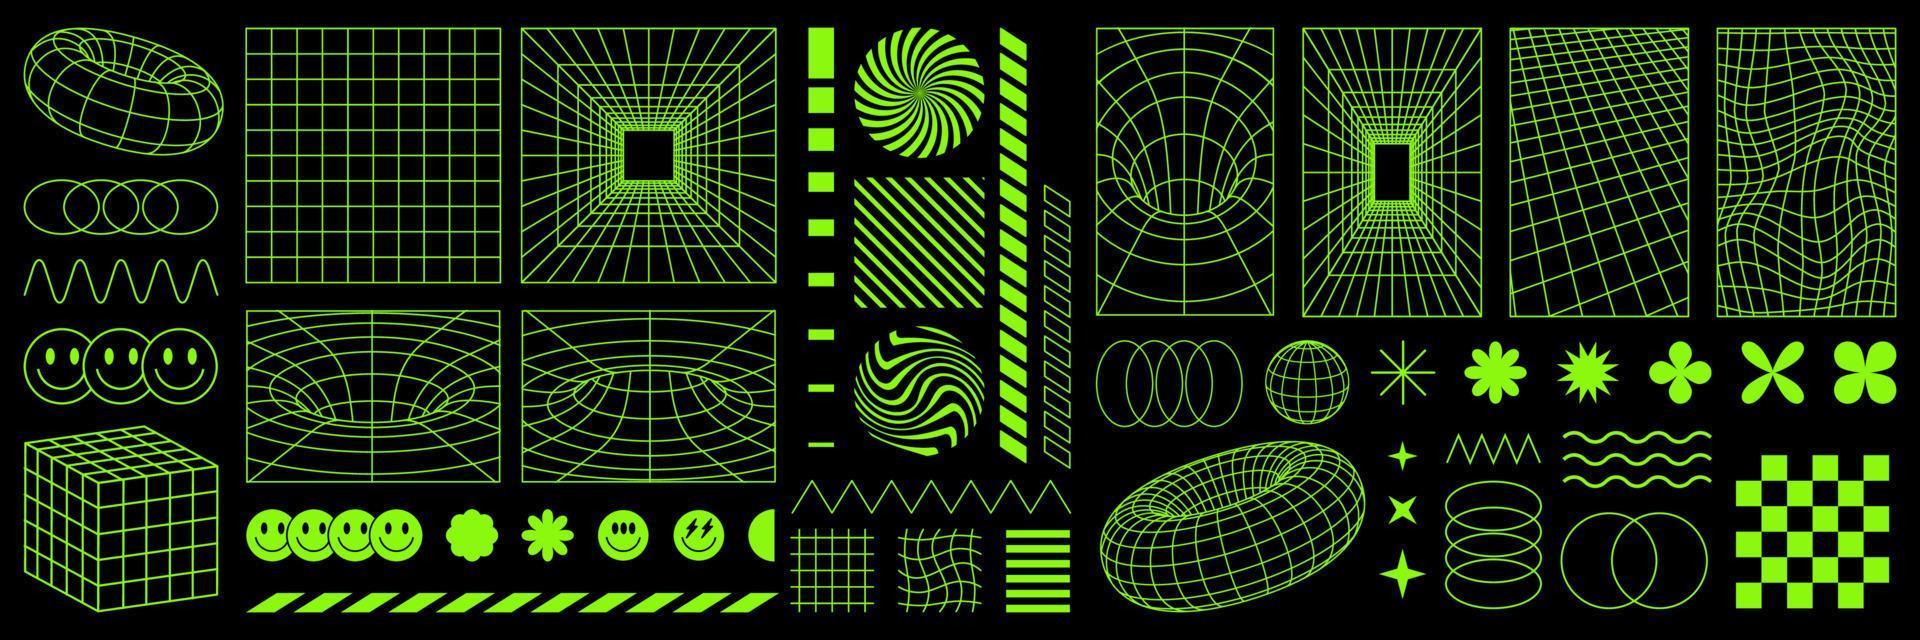 psychedelisches retro-futuristisches set. surreale geometrische form, cyberpunk-element und perspektivisches gitter. vektor